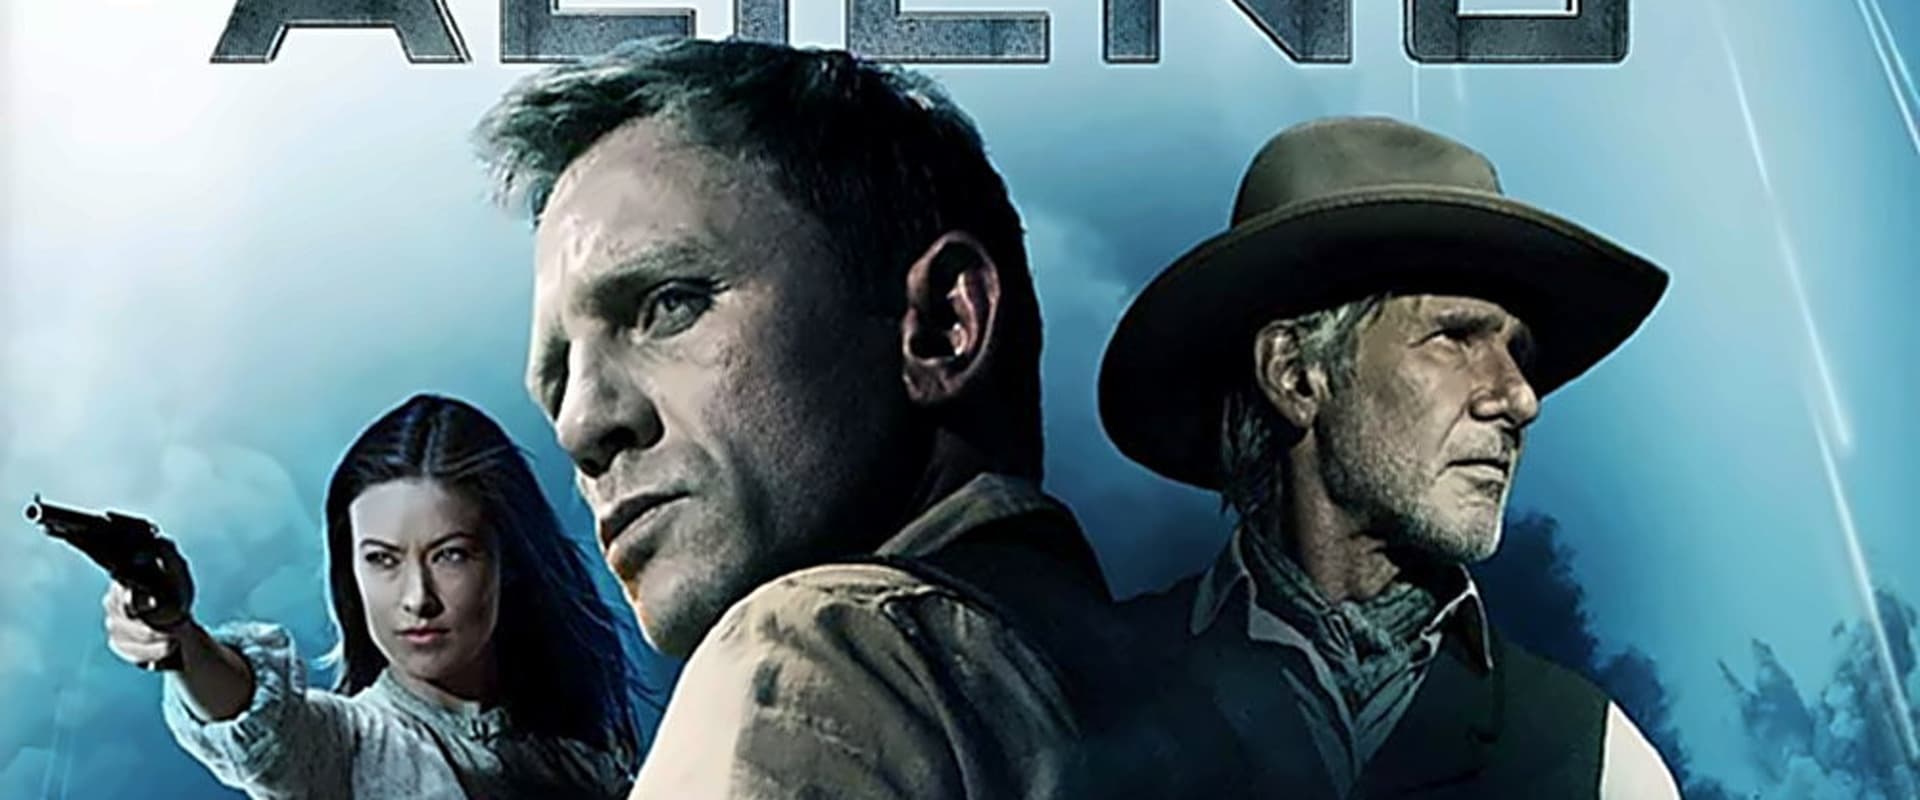 Cowboys & Aliens [HD] (2011)